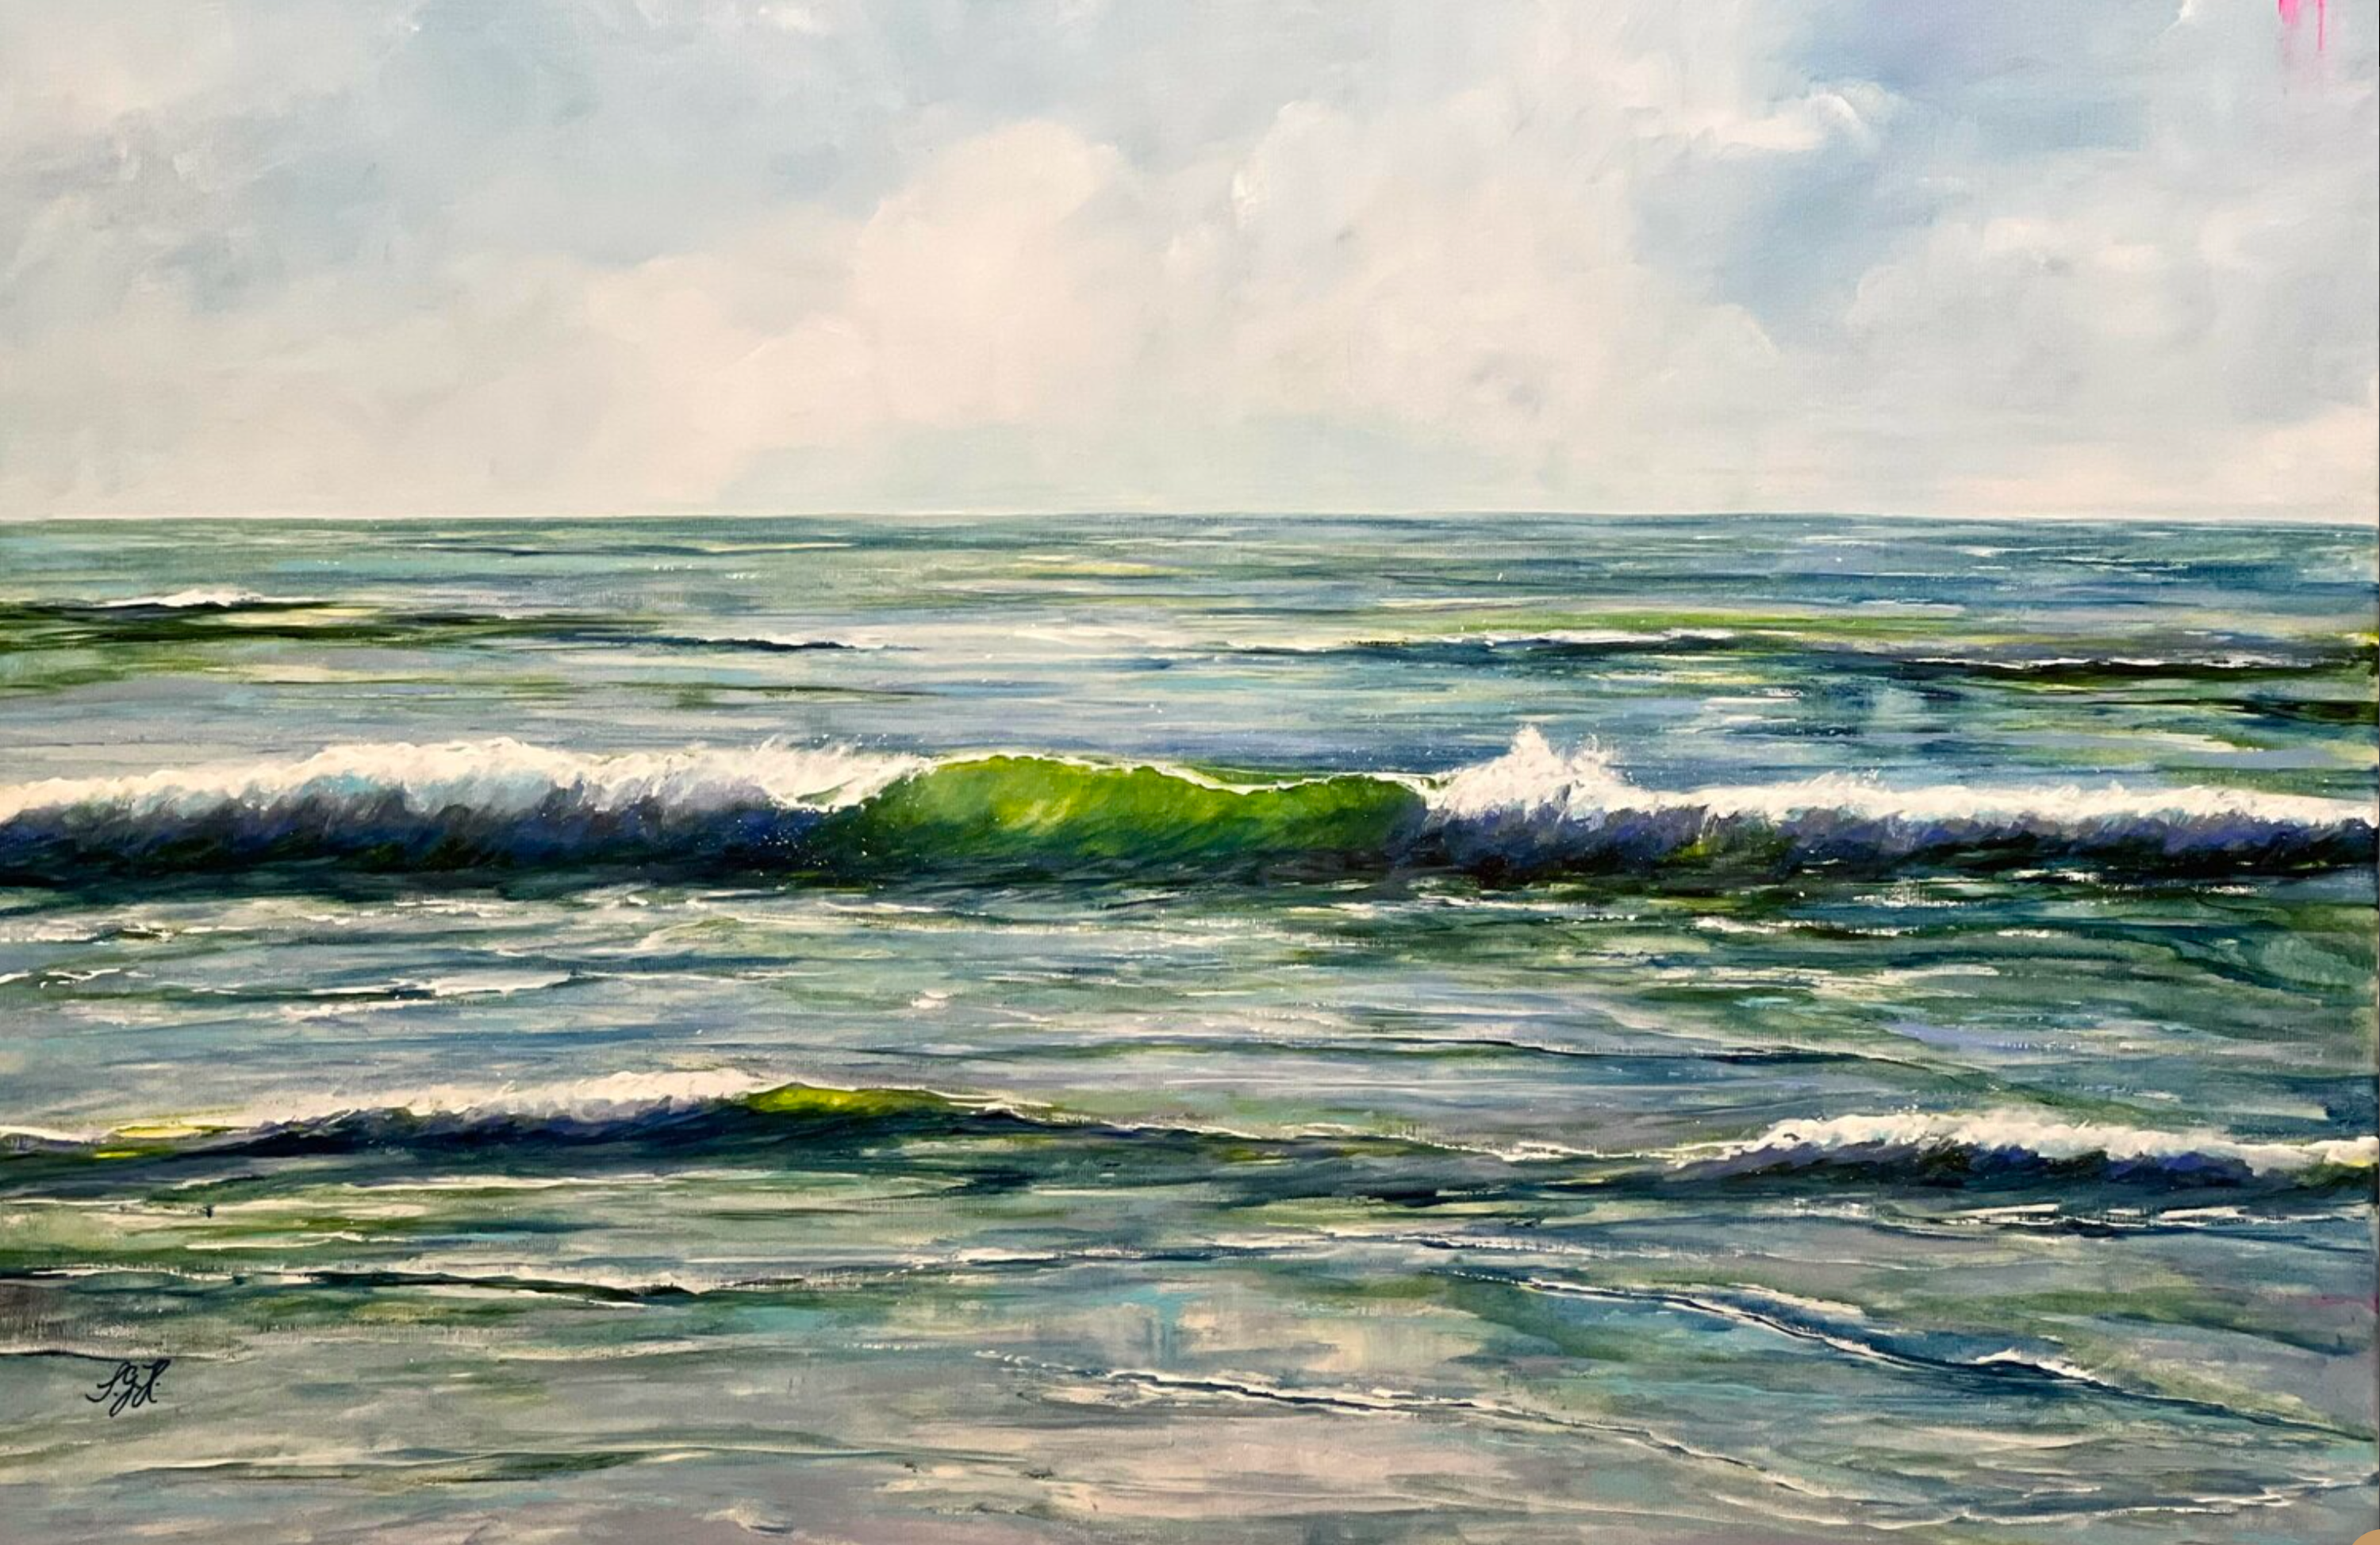 Cuadro "Green Wave 2" de Sandra Gebhardt-Hoepfner. El sol brilla en lo alto del cielo, haciendo que las olas que rompen en el hermoso mar parezcan de un verde translúcido. Es un día maravilloso, en plena naturaleza. La felicidad. Los colores son verde claro, verde oscuro, azul oscuro, azul grisáceo, gris oscuro y blanco.